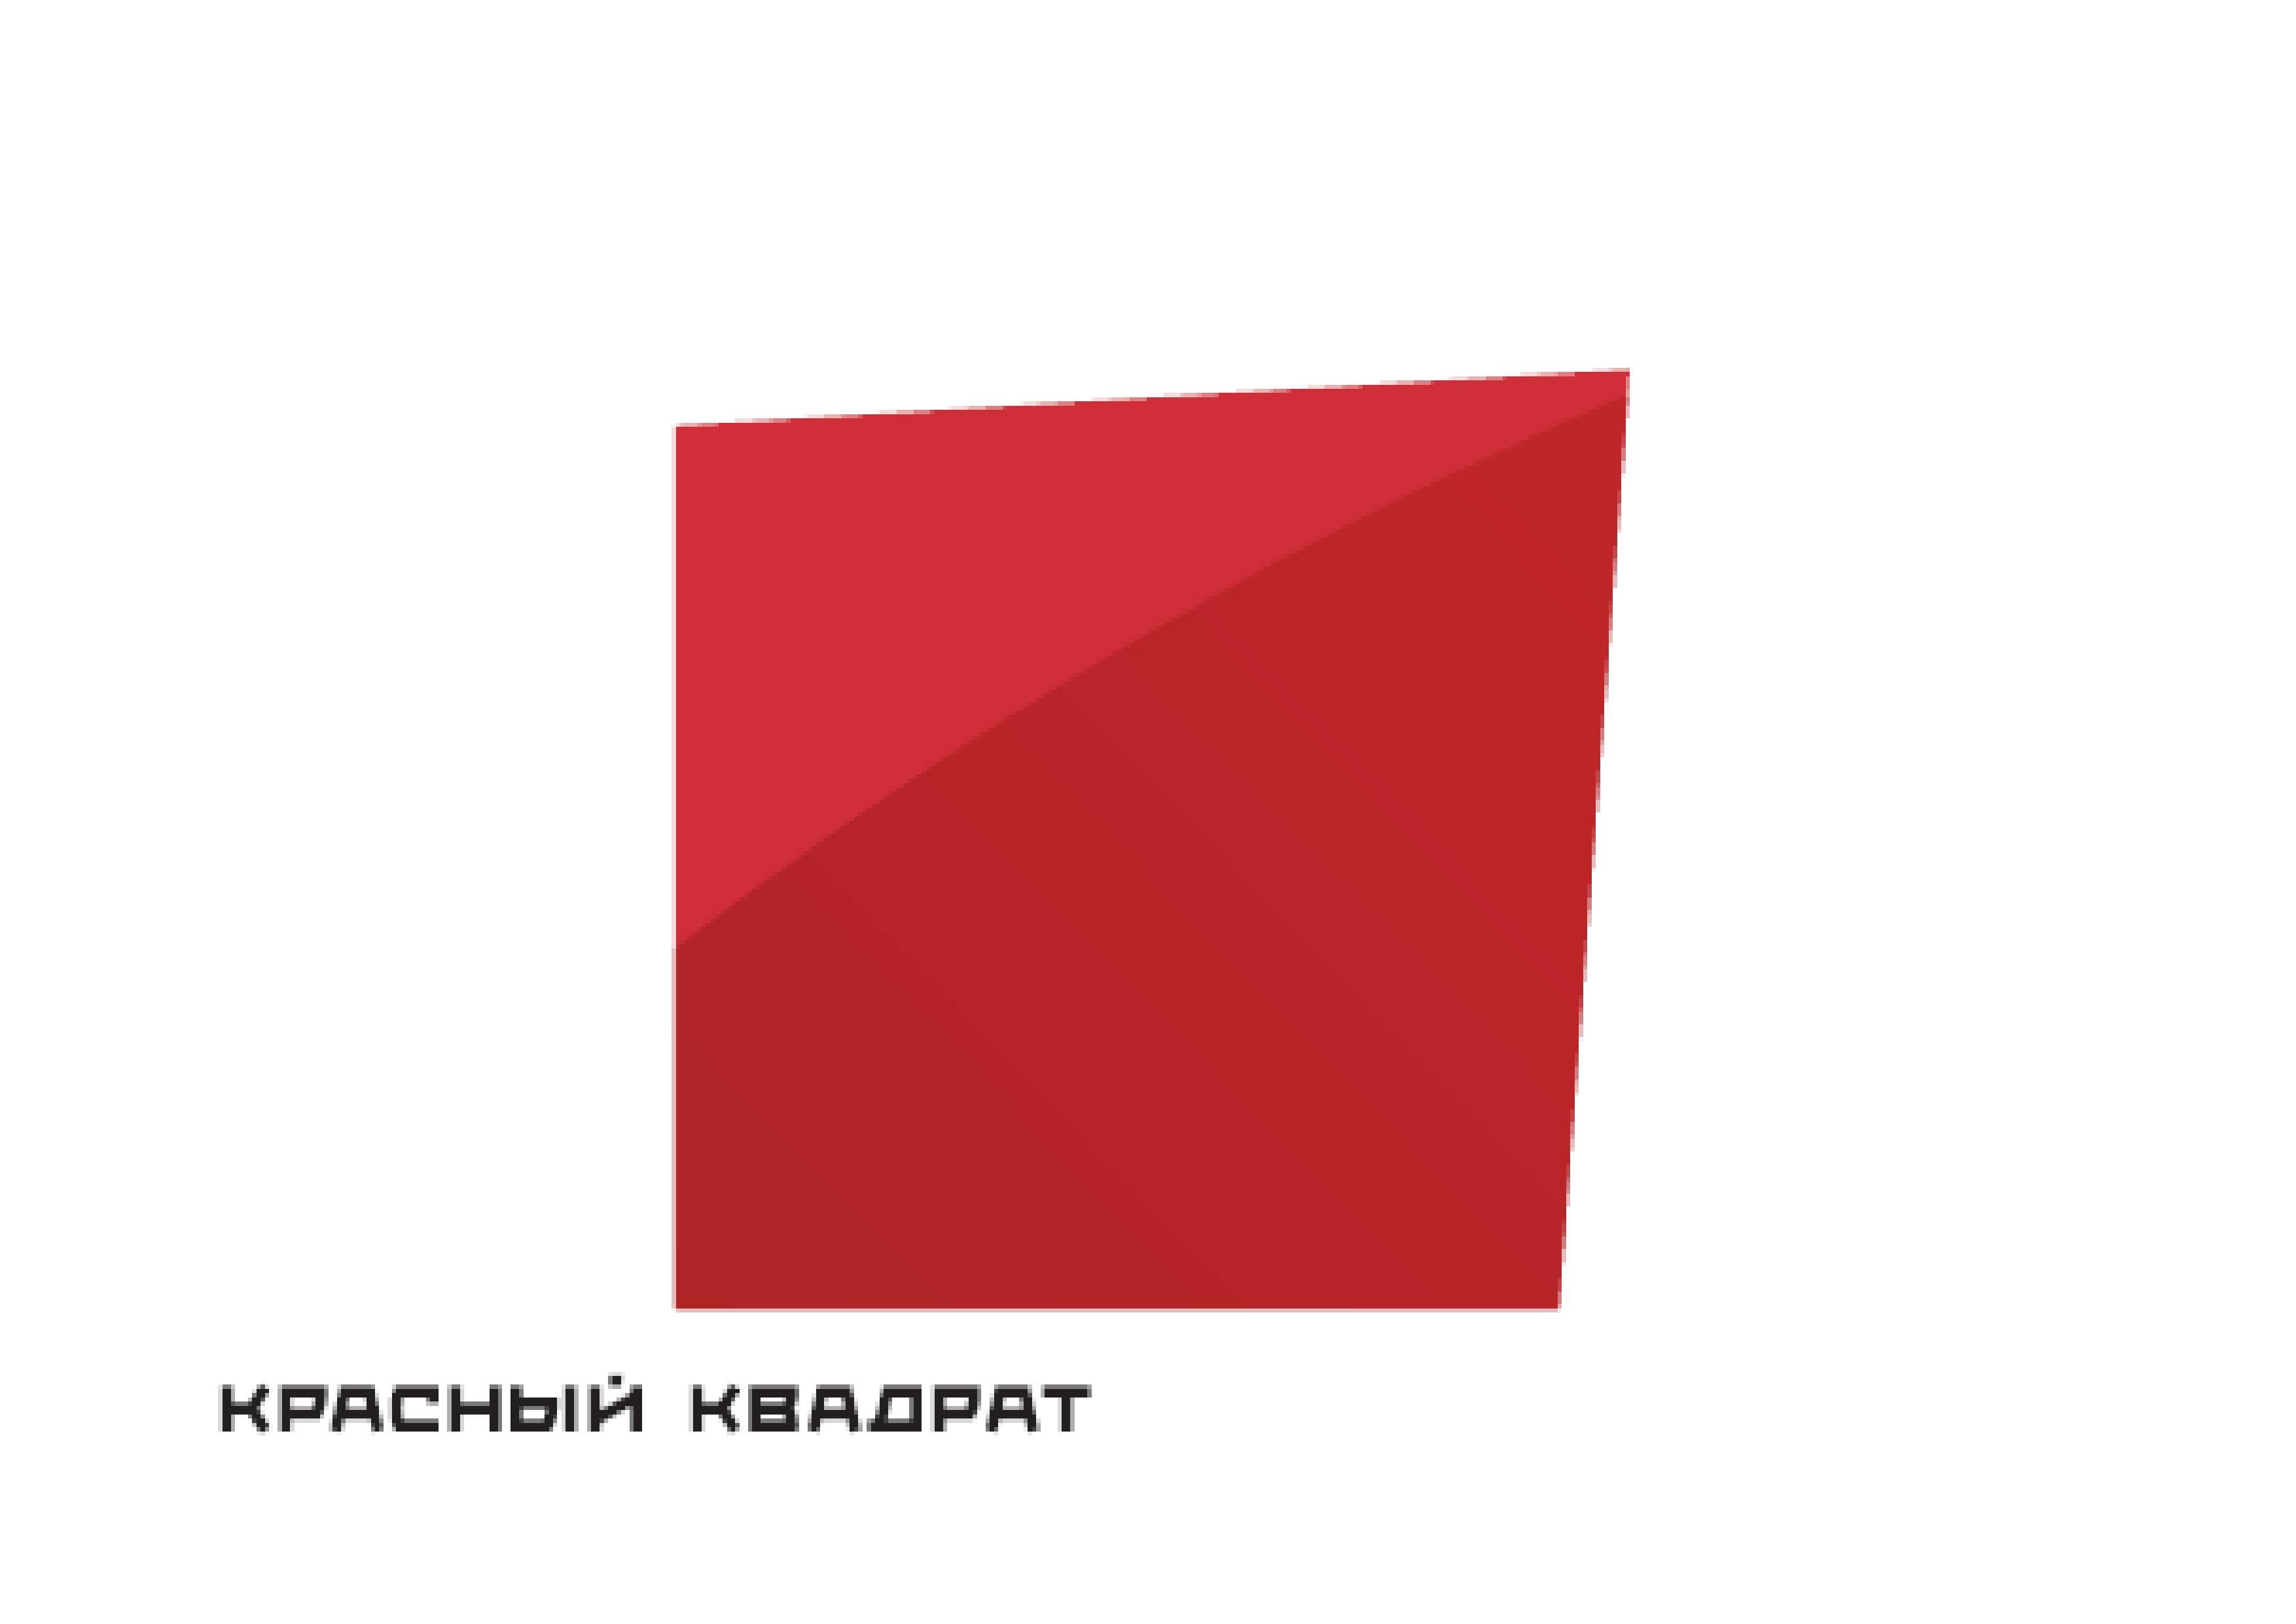 Сайт красный квадрат. Красный квадрат. Логотип красный квадрат. Красный квадрат фирма. Медиагруппа красный квадрат.